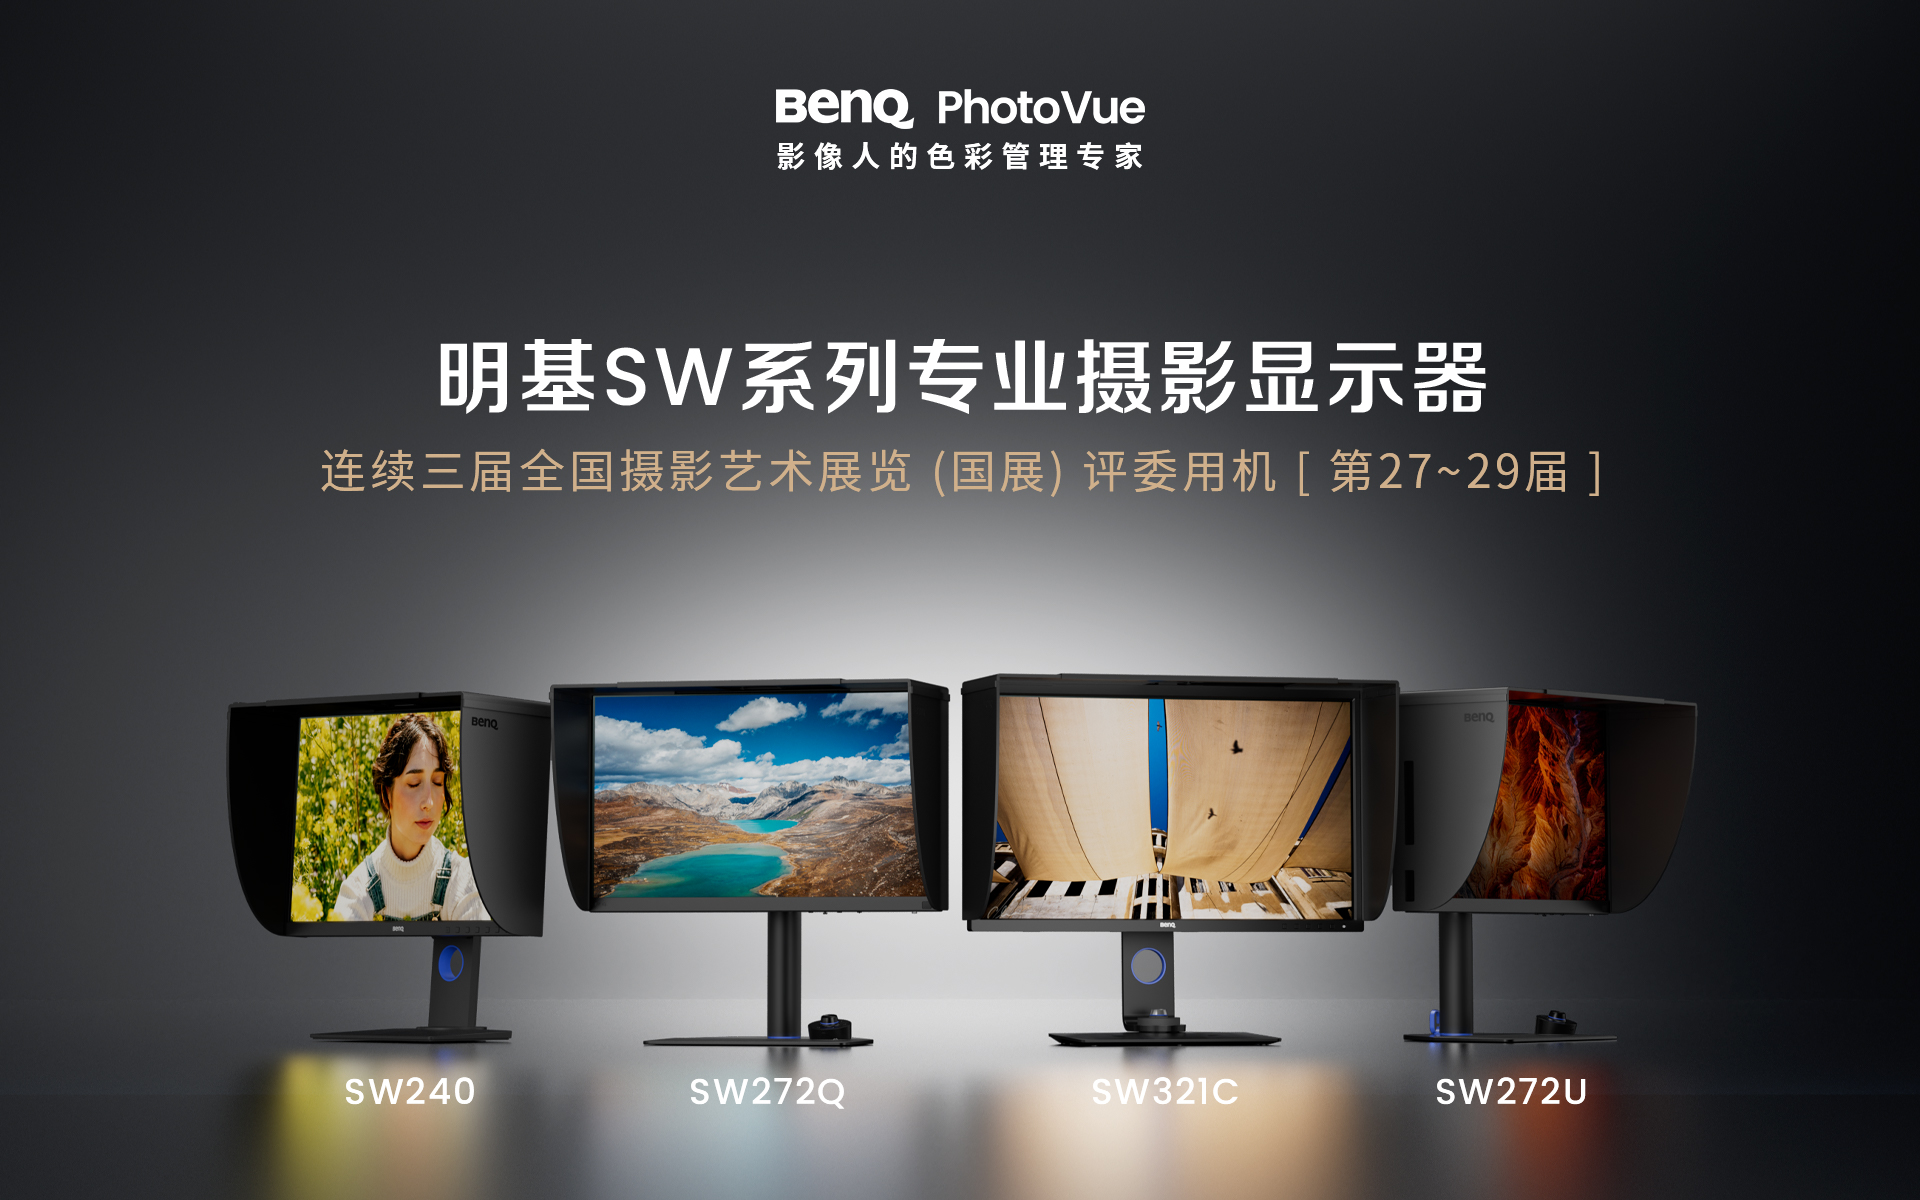 明基发布全新的SW242Q专业摄影显示器，重新定义专业后期设备的第一选择。